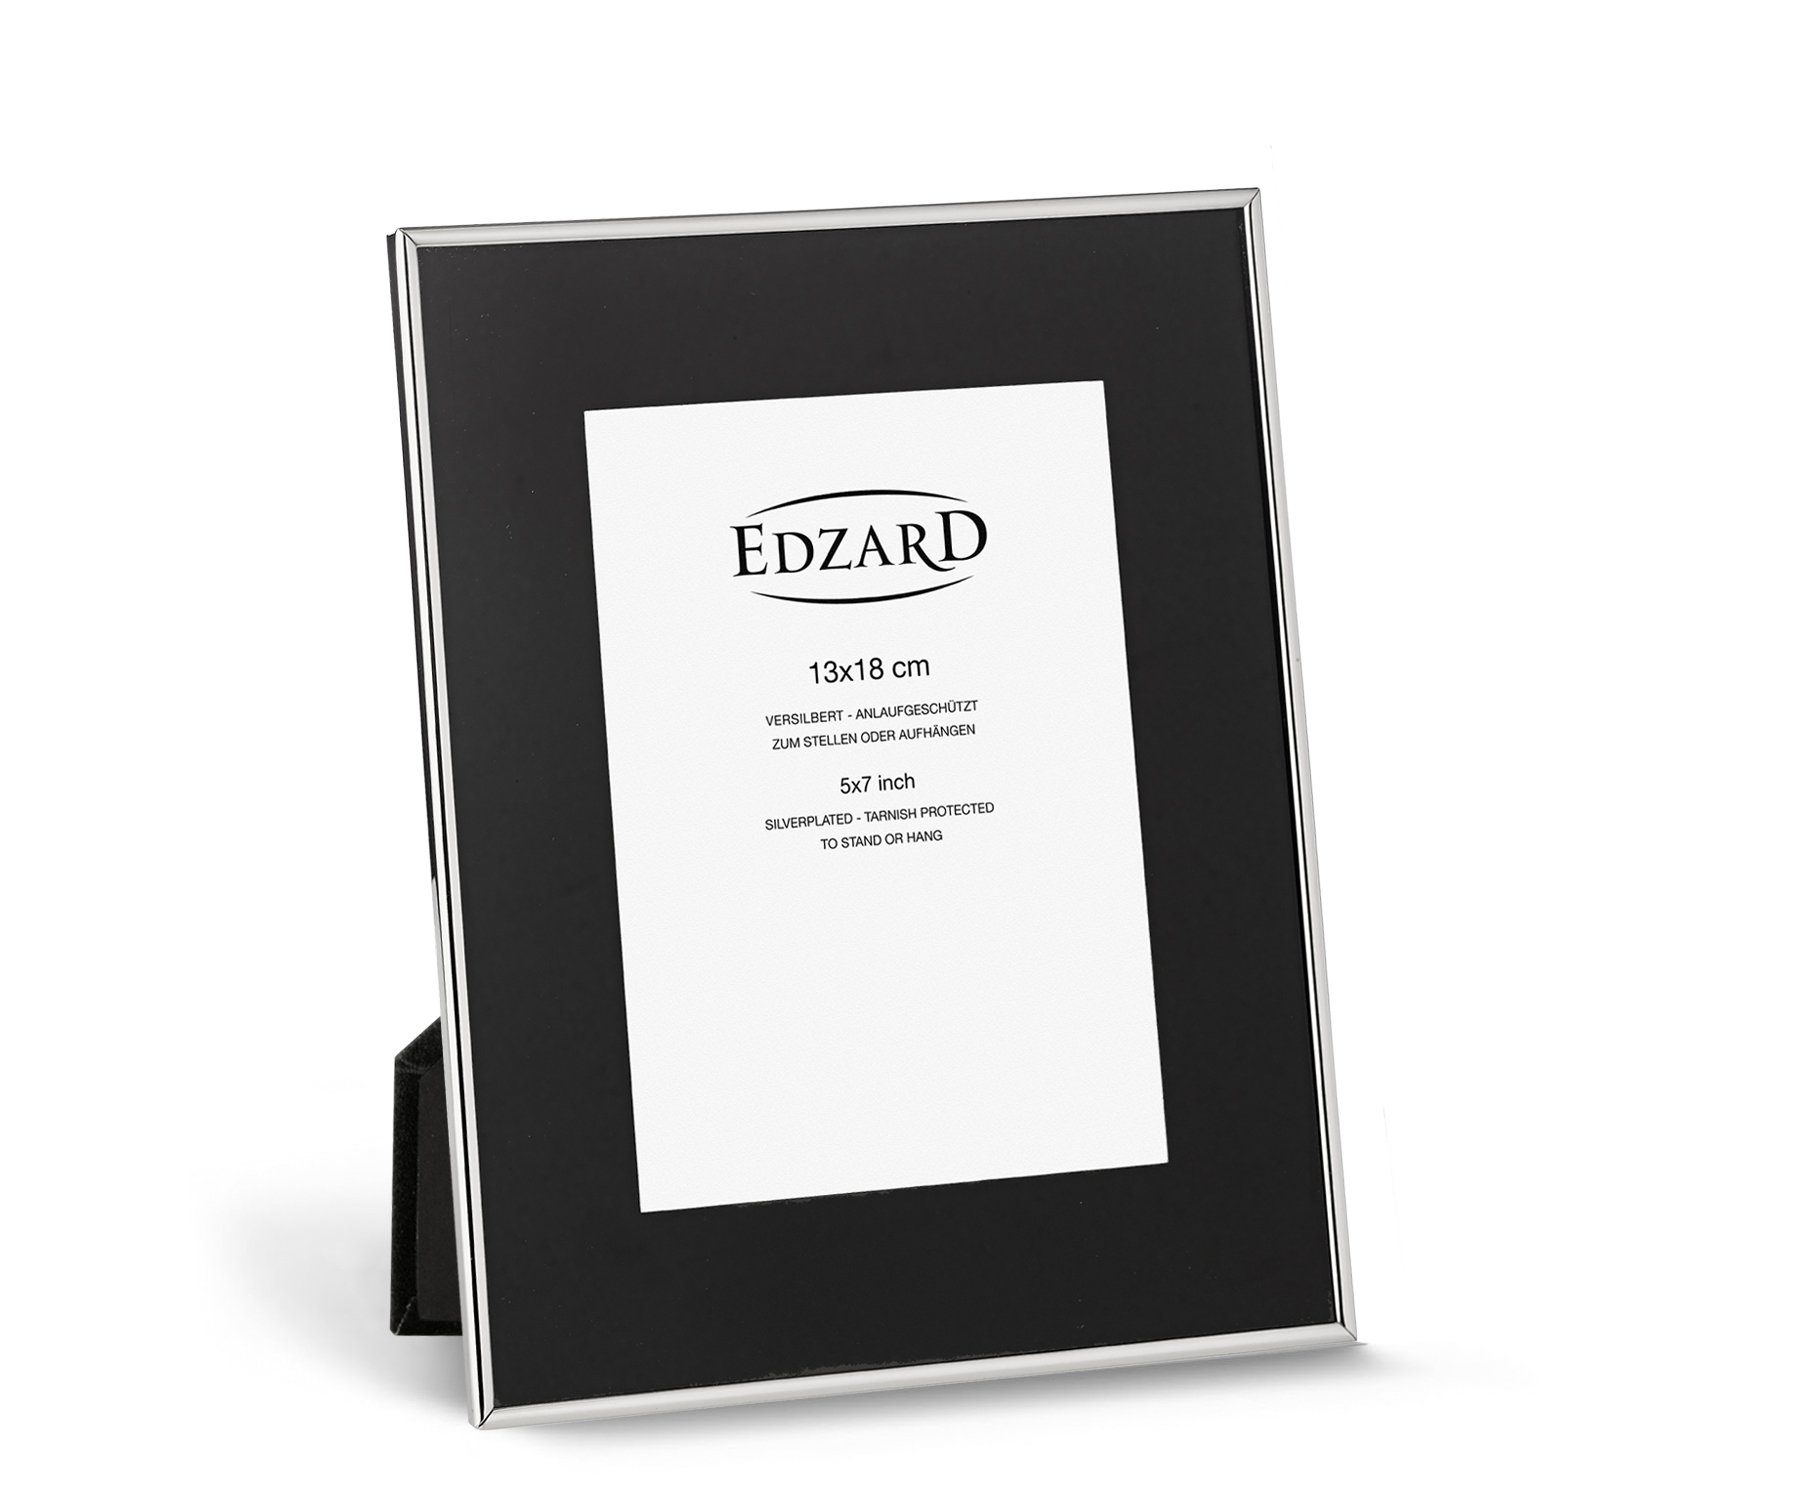 EDZARD Bilderrahmen Elda, versilbert und anlaufgeschützt, für 10x15 cm Foto